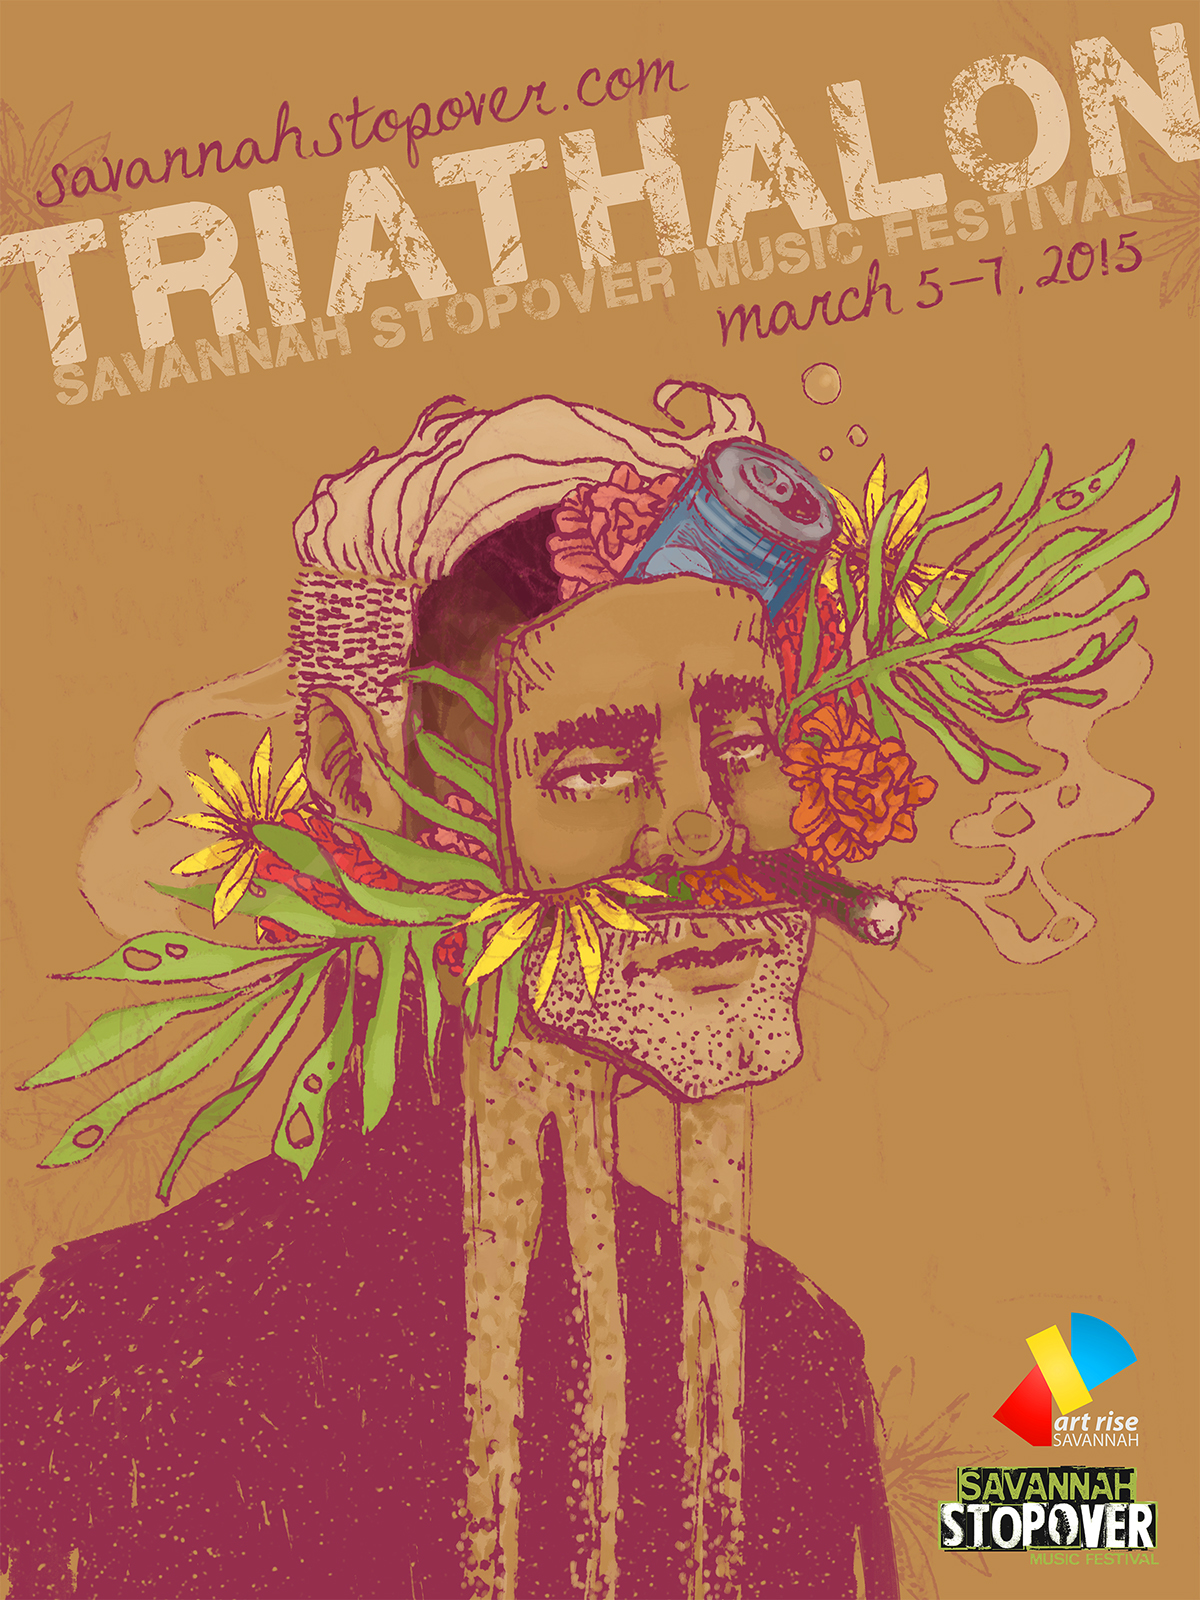 Savannah musicfestival poster graphite digital DigitalIllustration